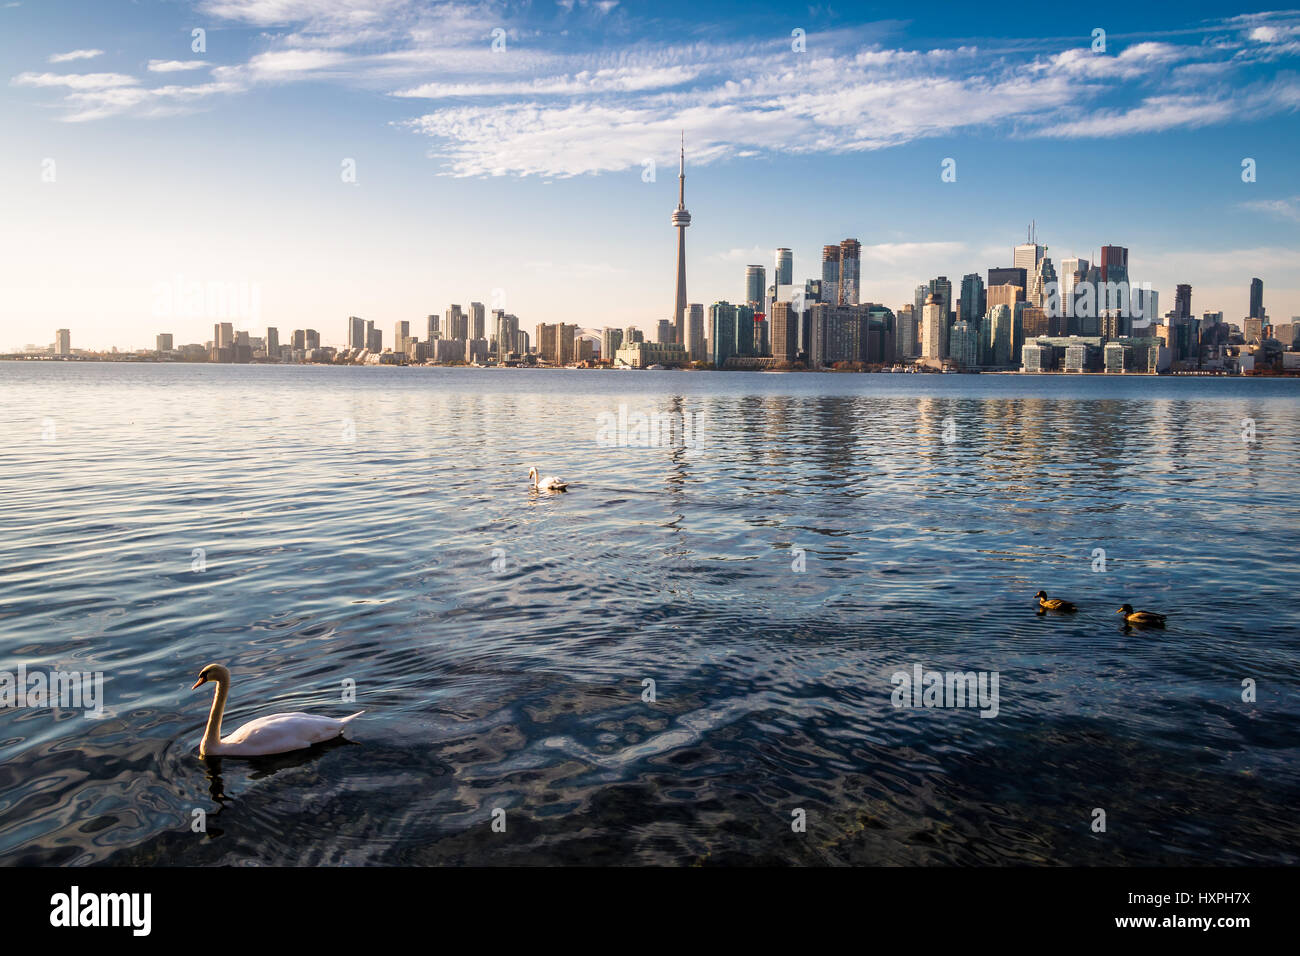 Toronto Skyline and swans - Toronto, Ontario, Canada swimming on Ontario lake - Toronto, Ontario, Canada Stock Photo